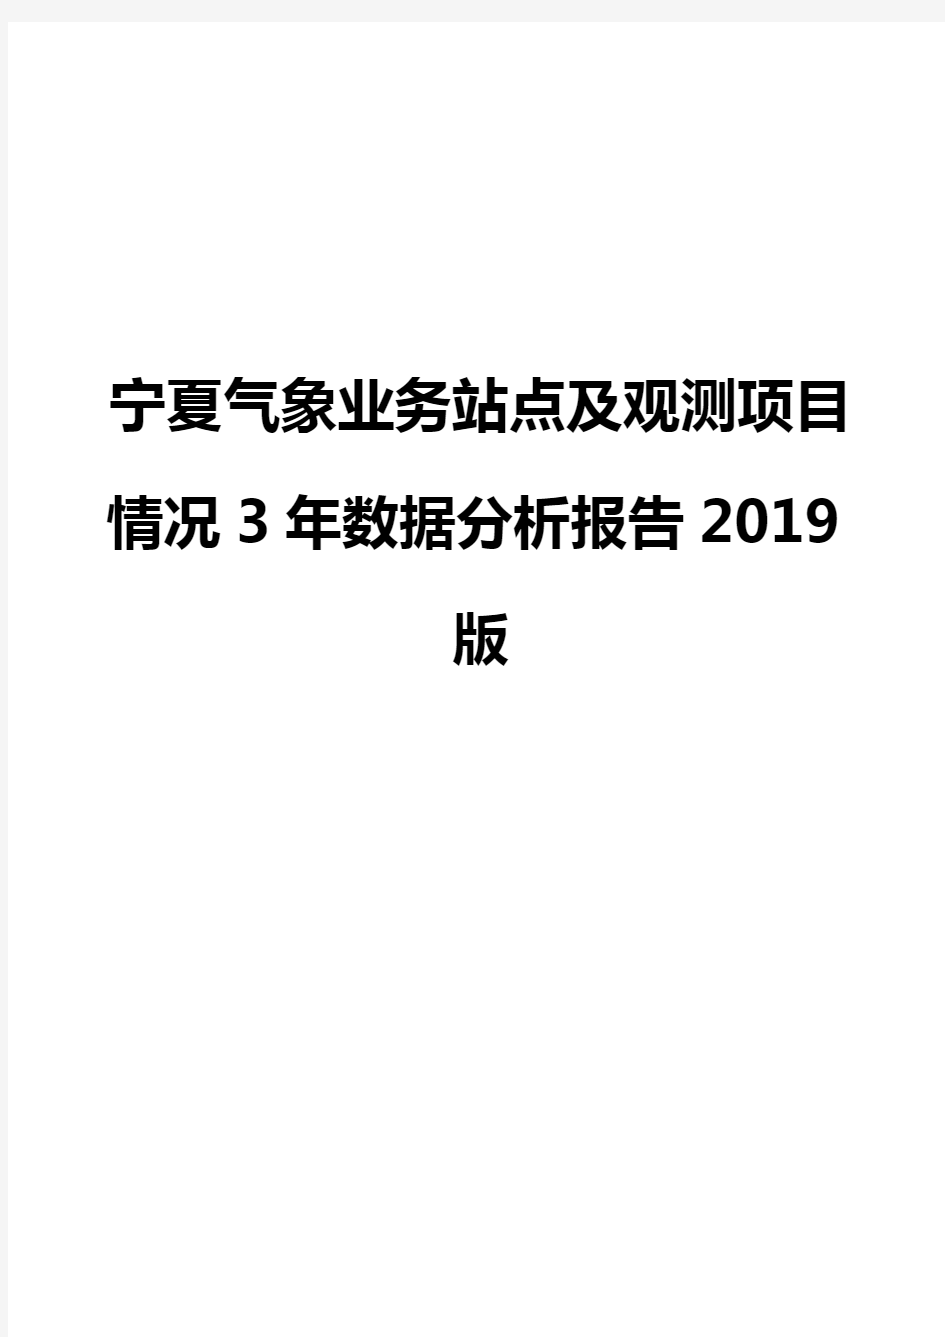 宁夏气象业务站点及观测项目情况3年数据分析报告2019版